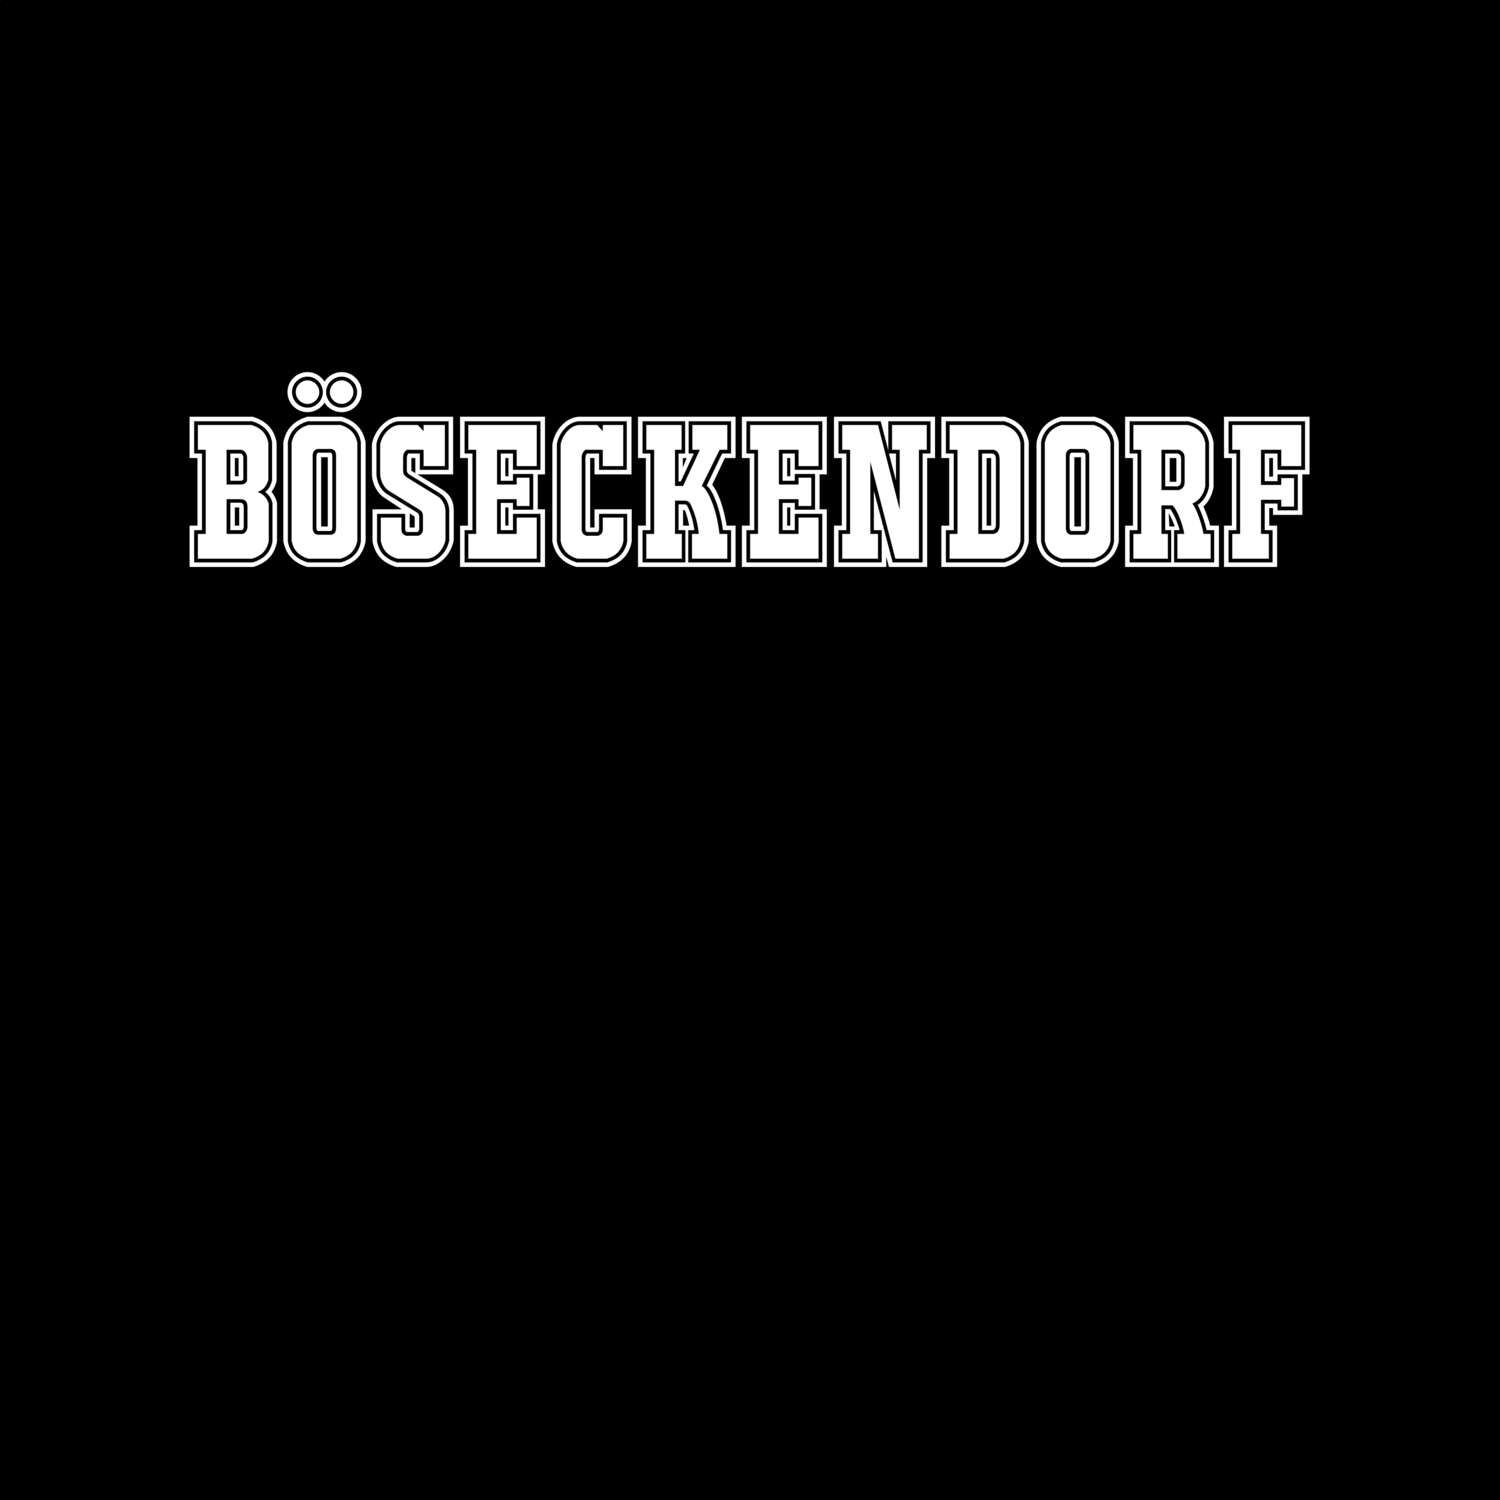 Böseckendorf T-Shirt »Classic«